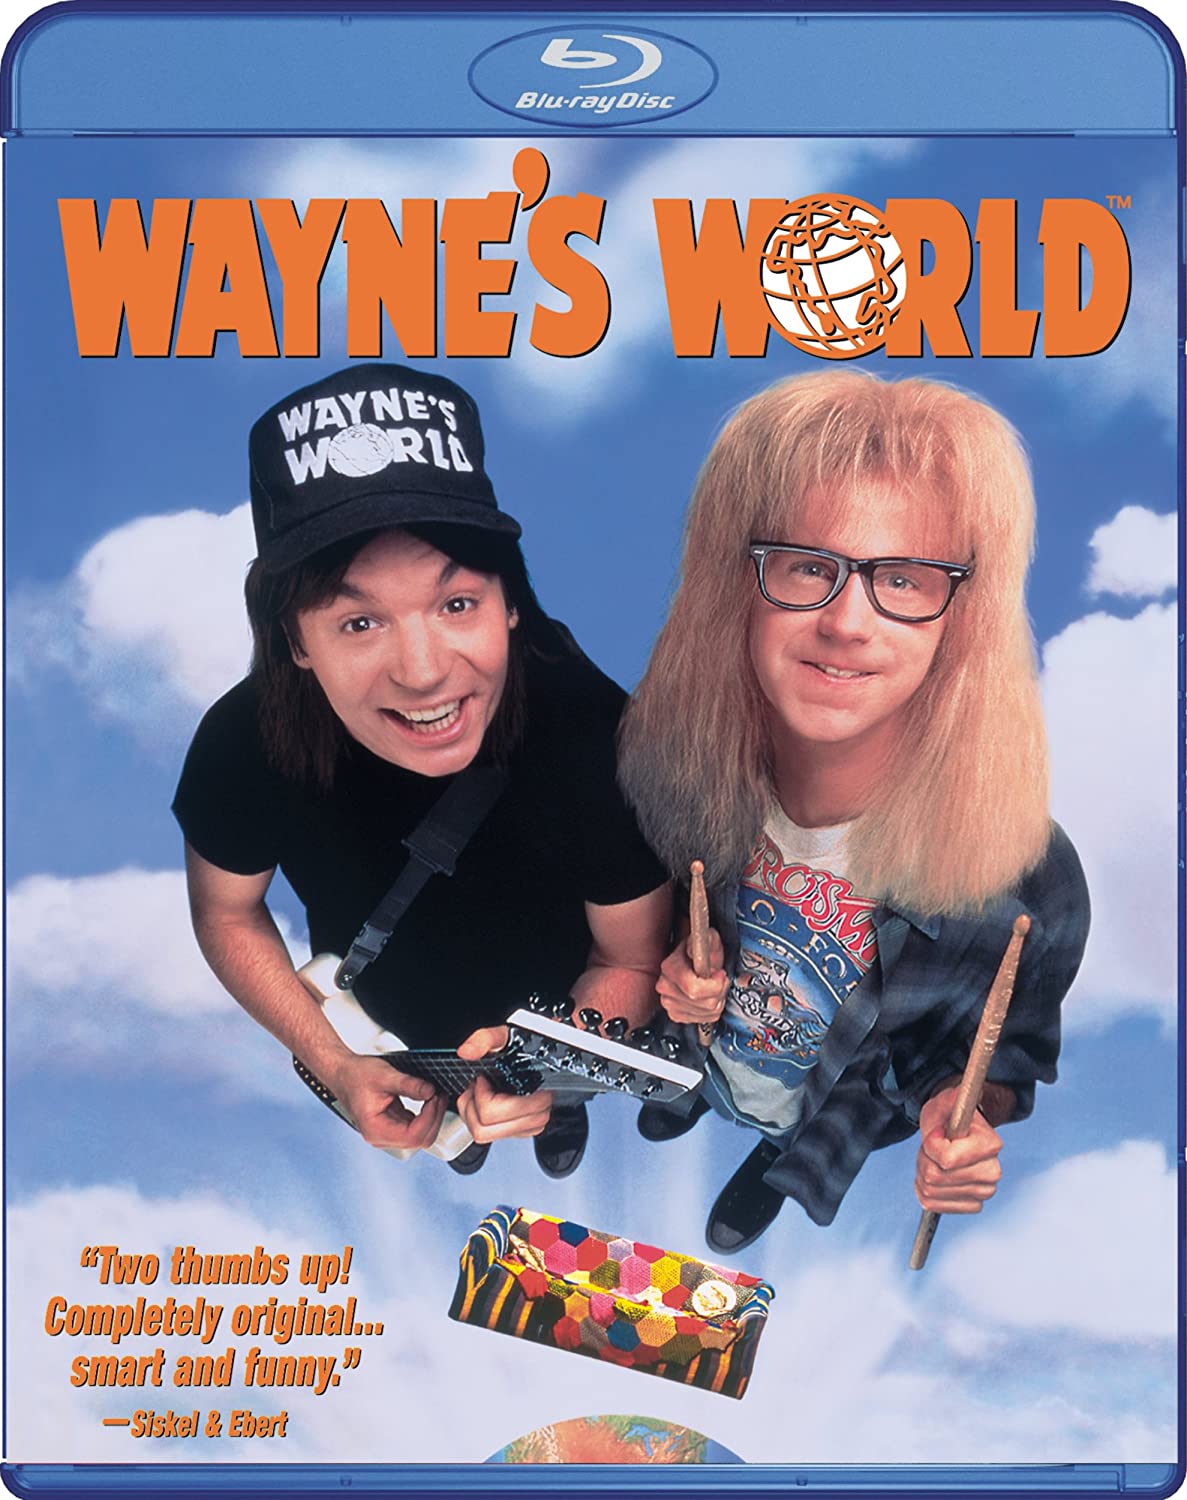 Wayne's World - Blu-ray (Used Once)